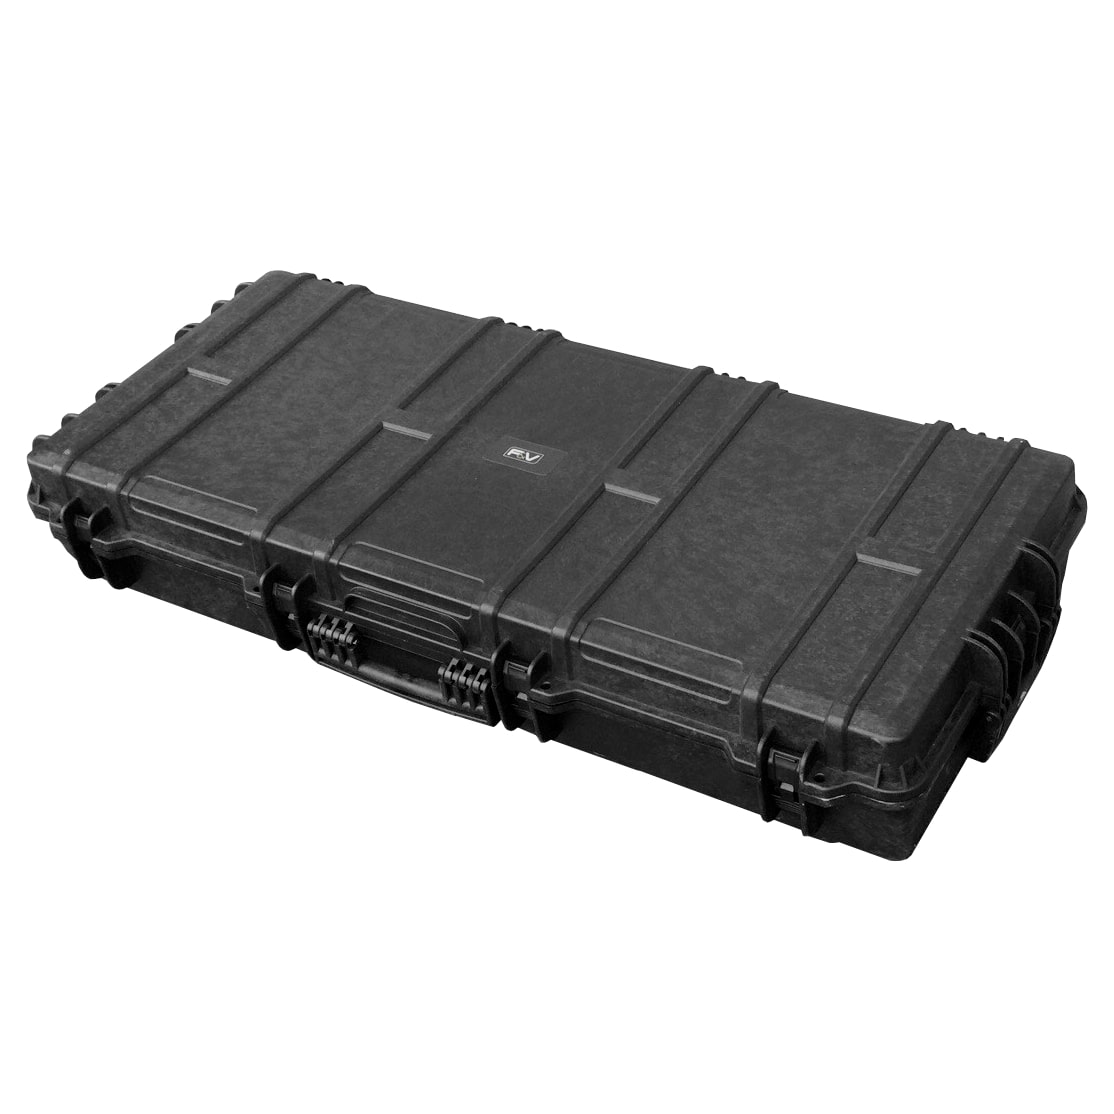 F&V Z1200VC case